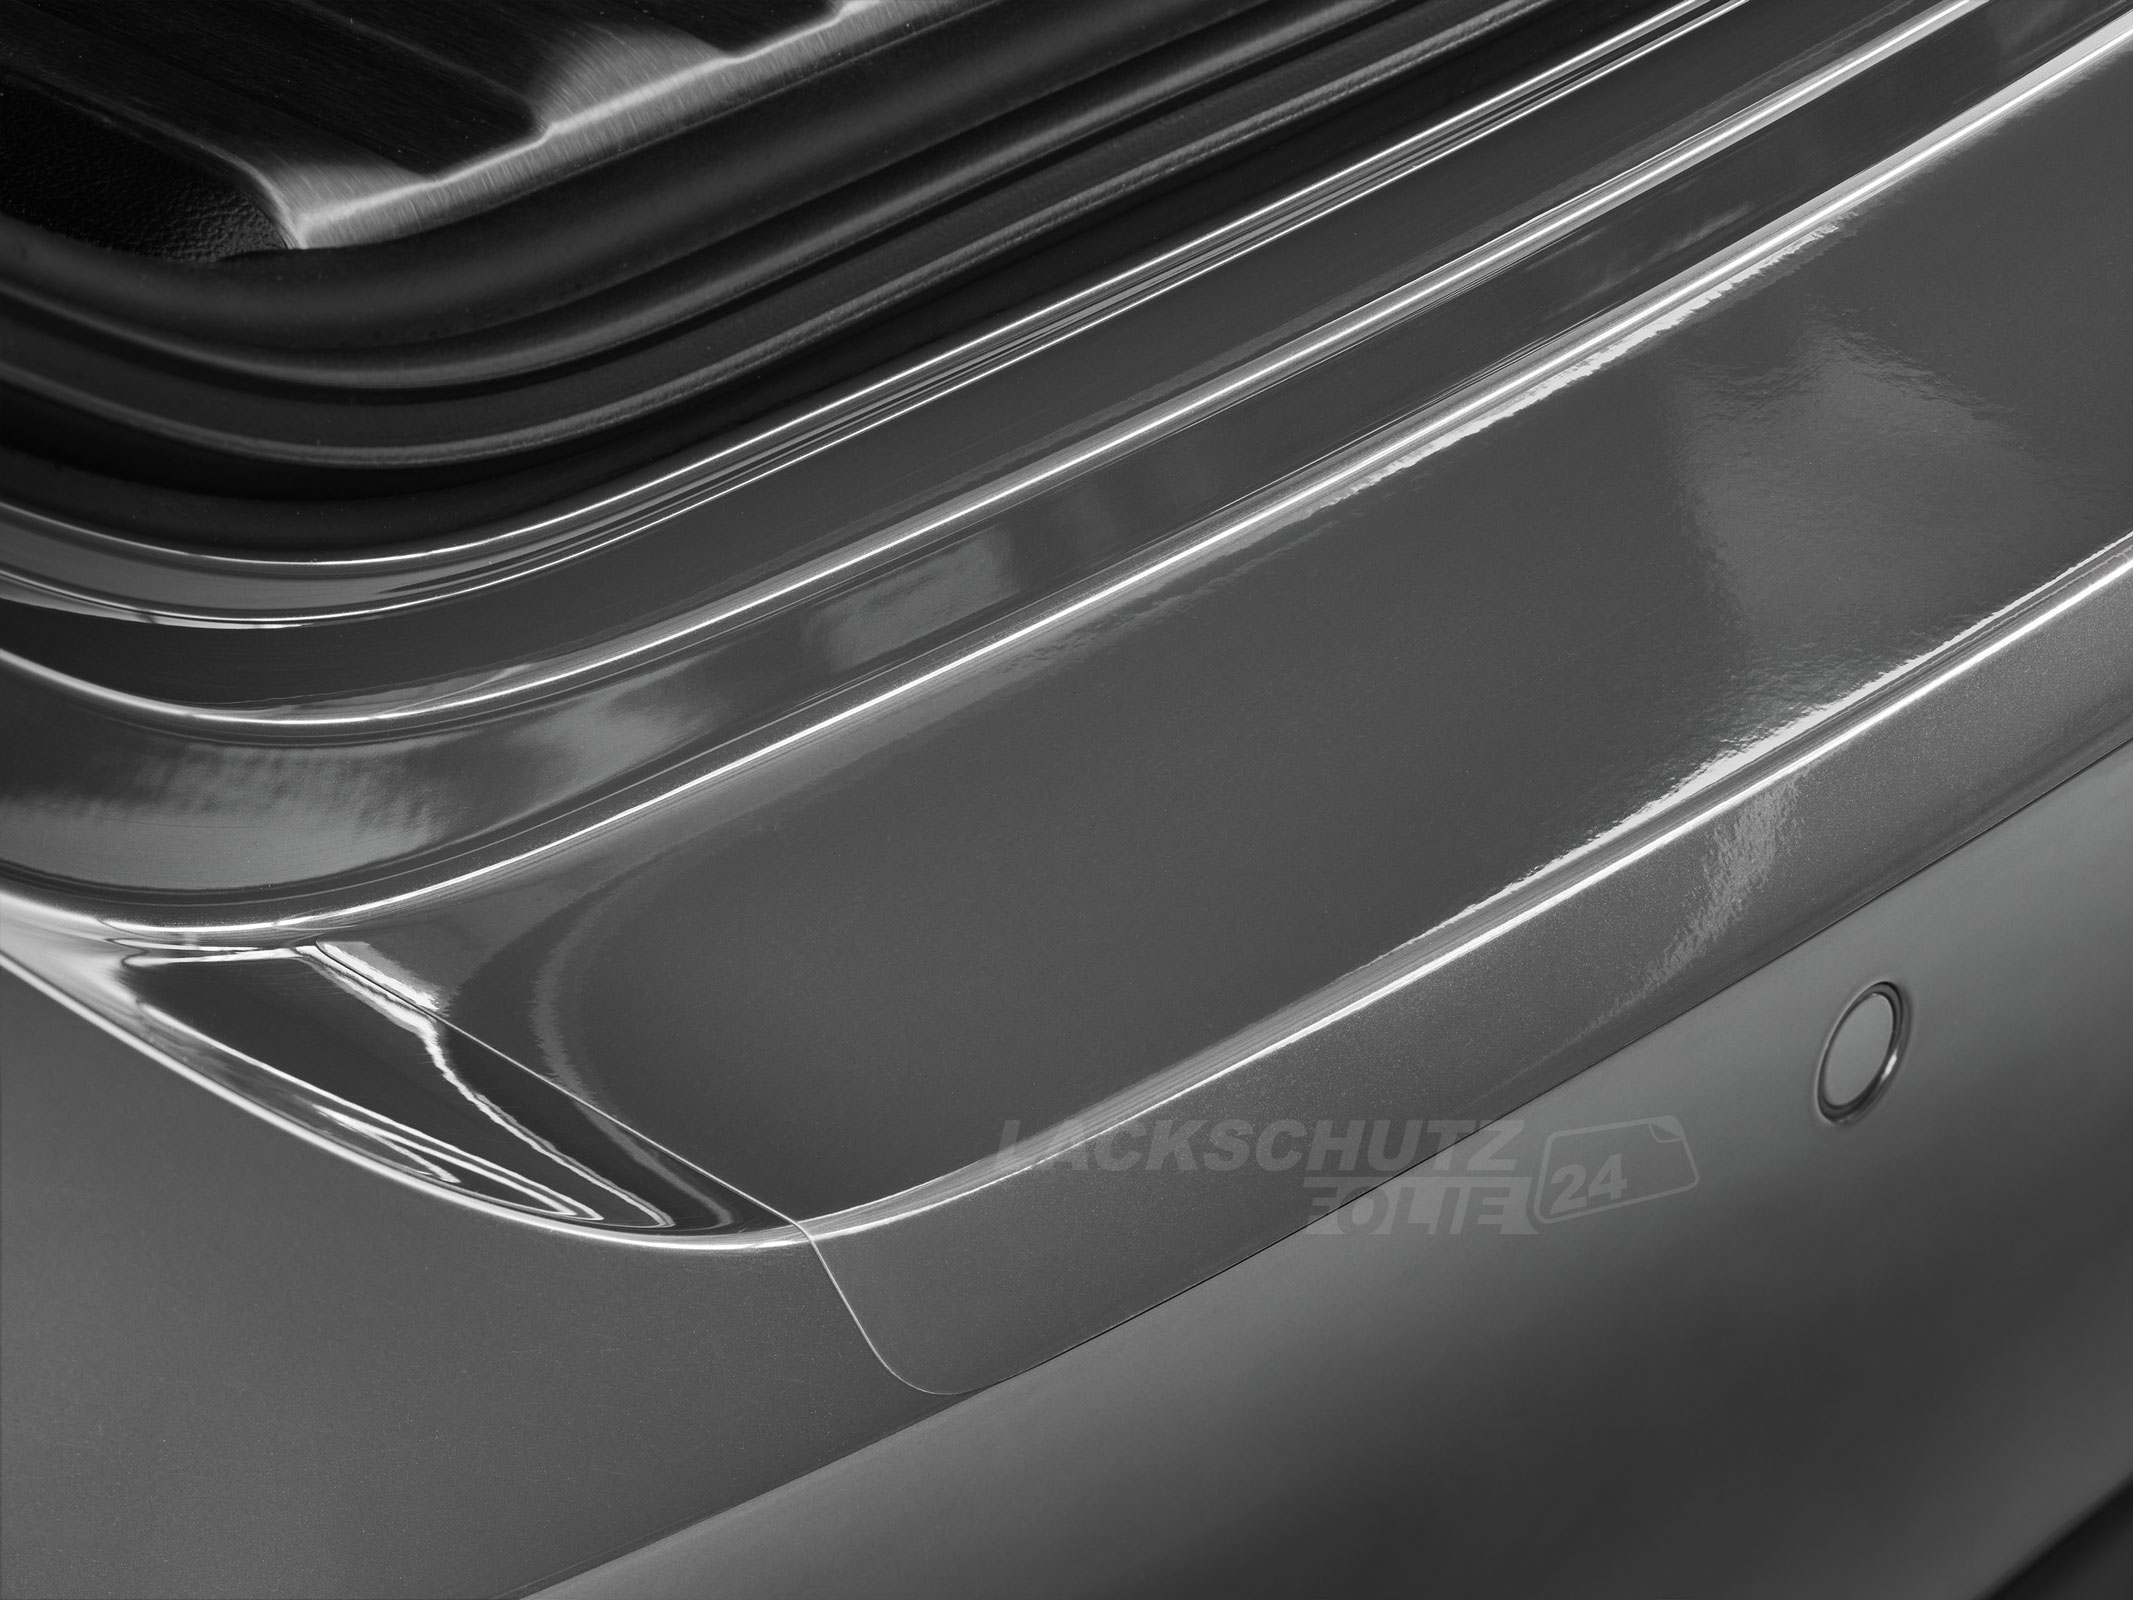 Ladekantenschutzfolie - Transparent Glatt Hochglänzend 240 µm stark für Mazda 2 Typ DJ ab BJ 2014 + Facelift